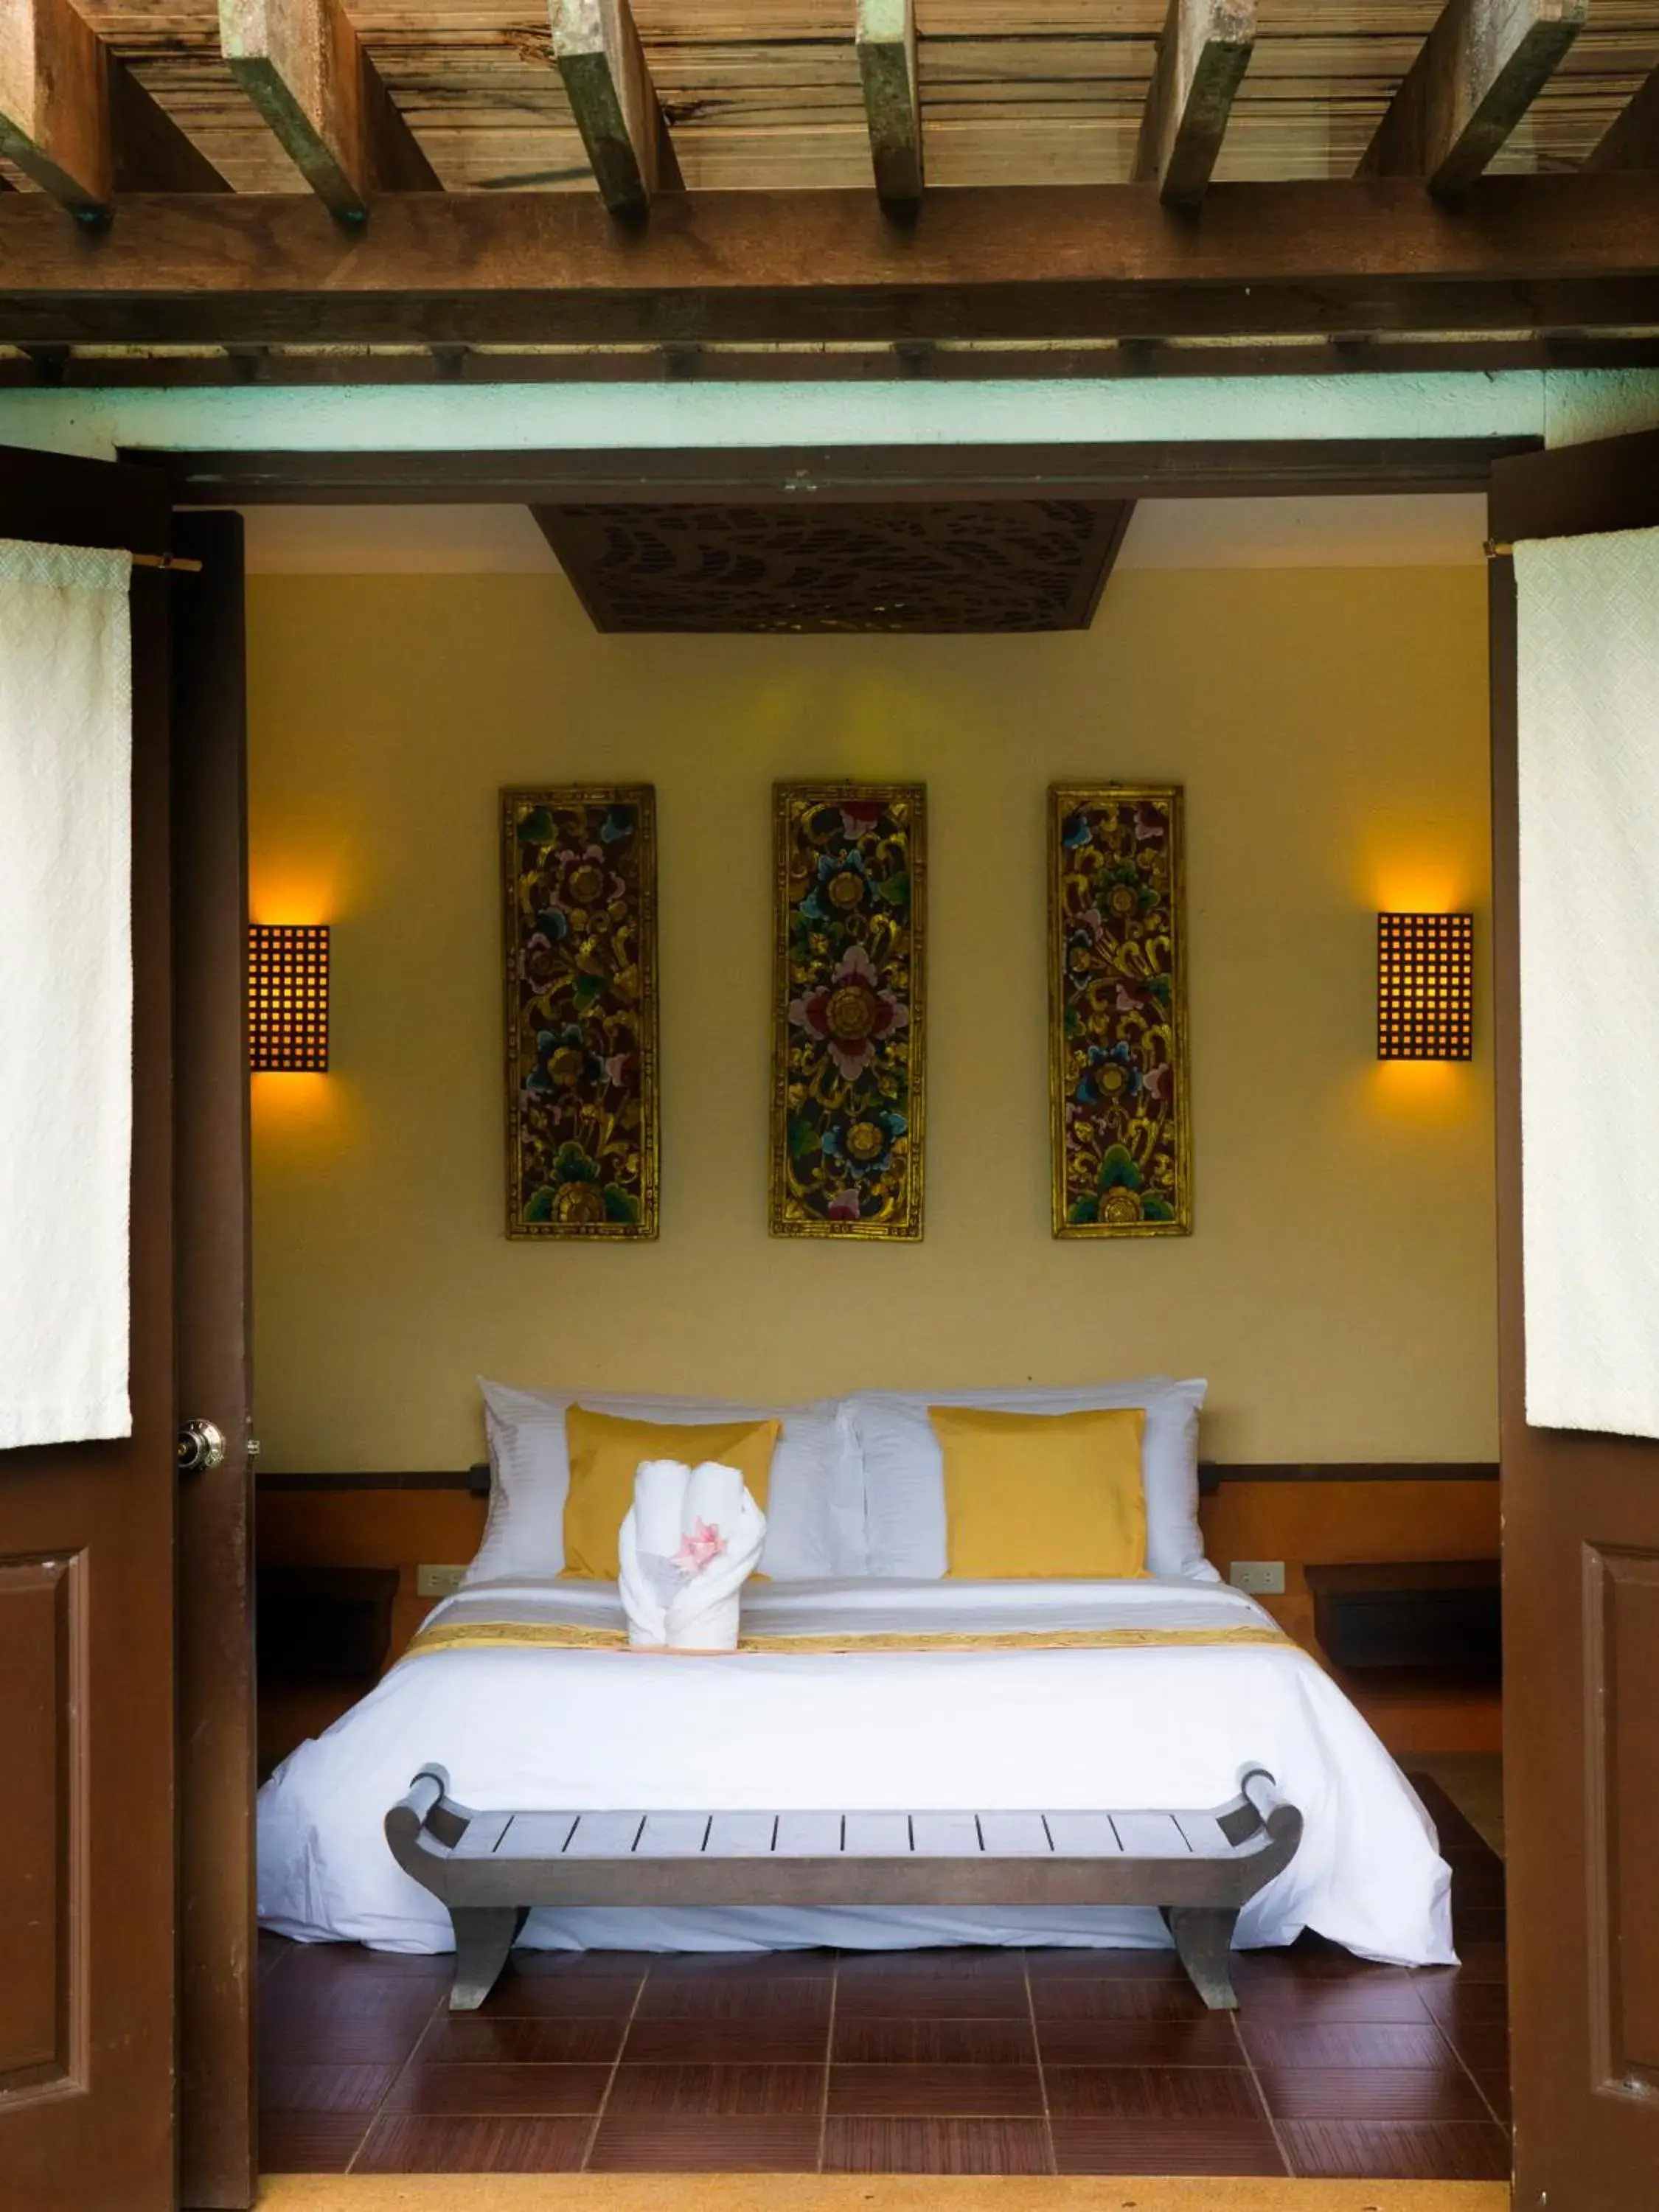 Bed in Playa Tropical Resort Hotel